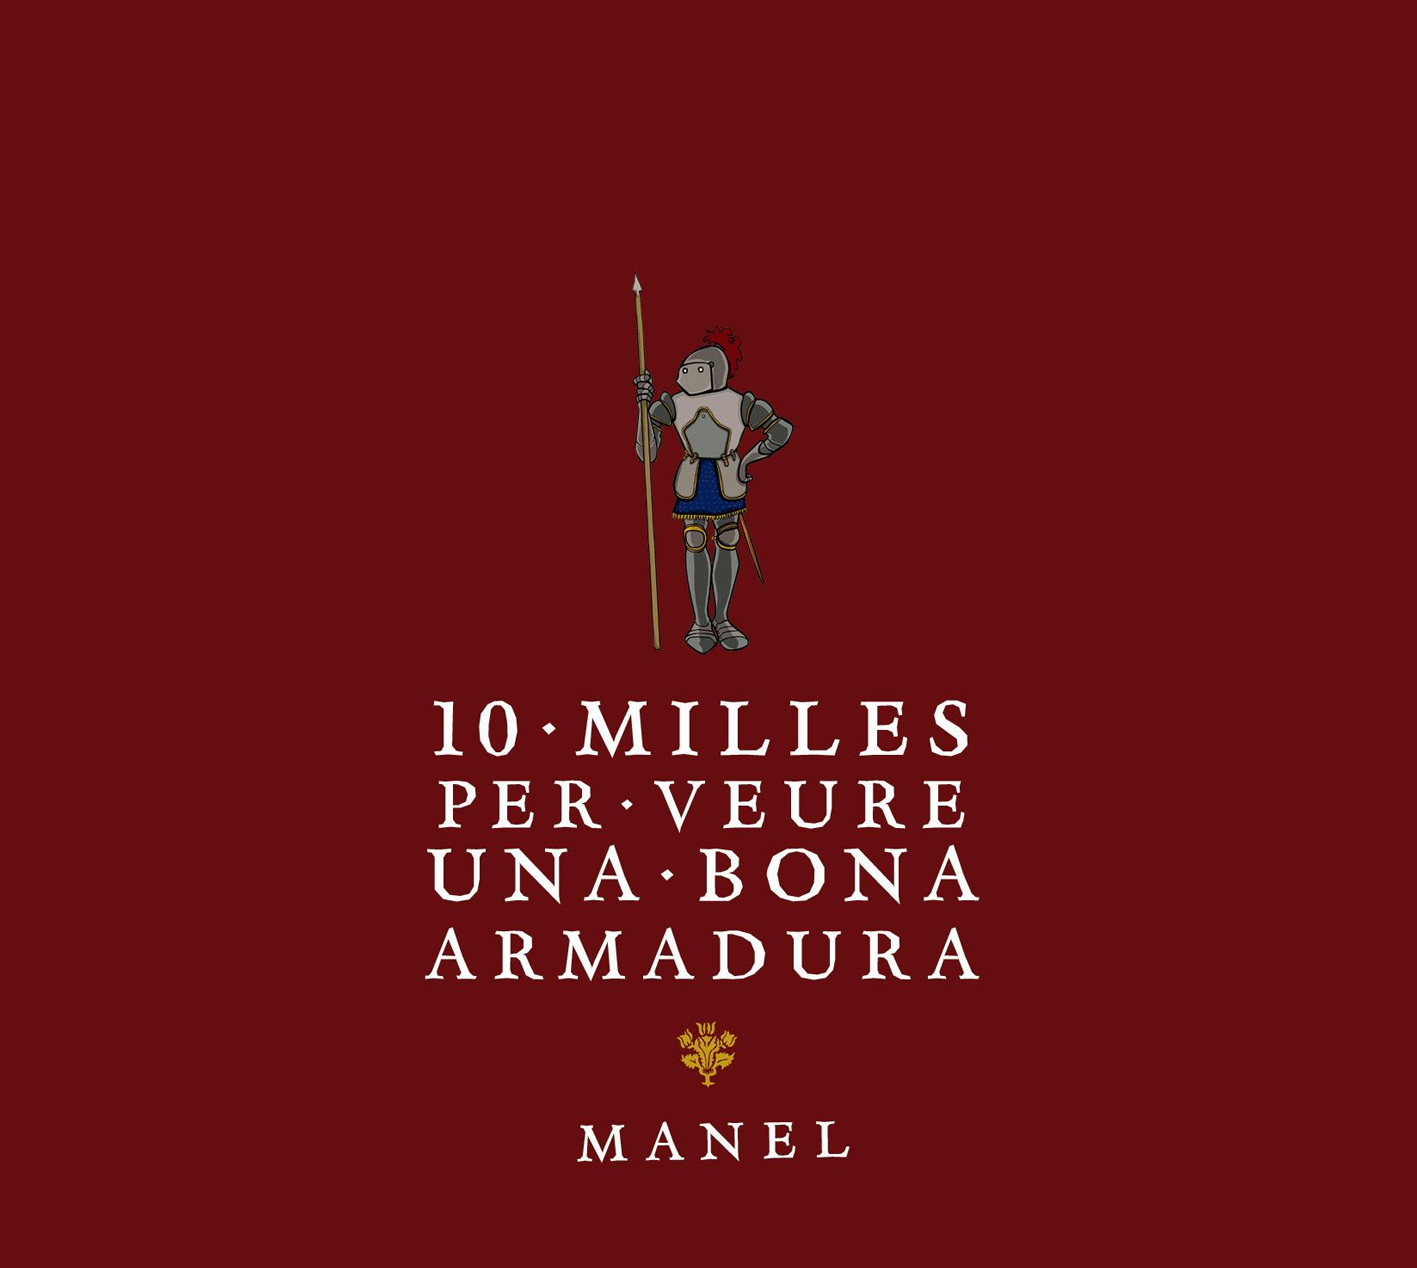 Manel "10 milles per veure una bona armadura" LP